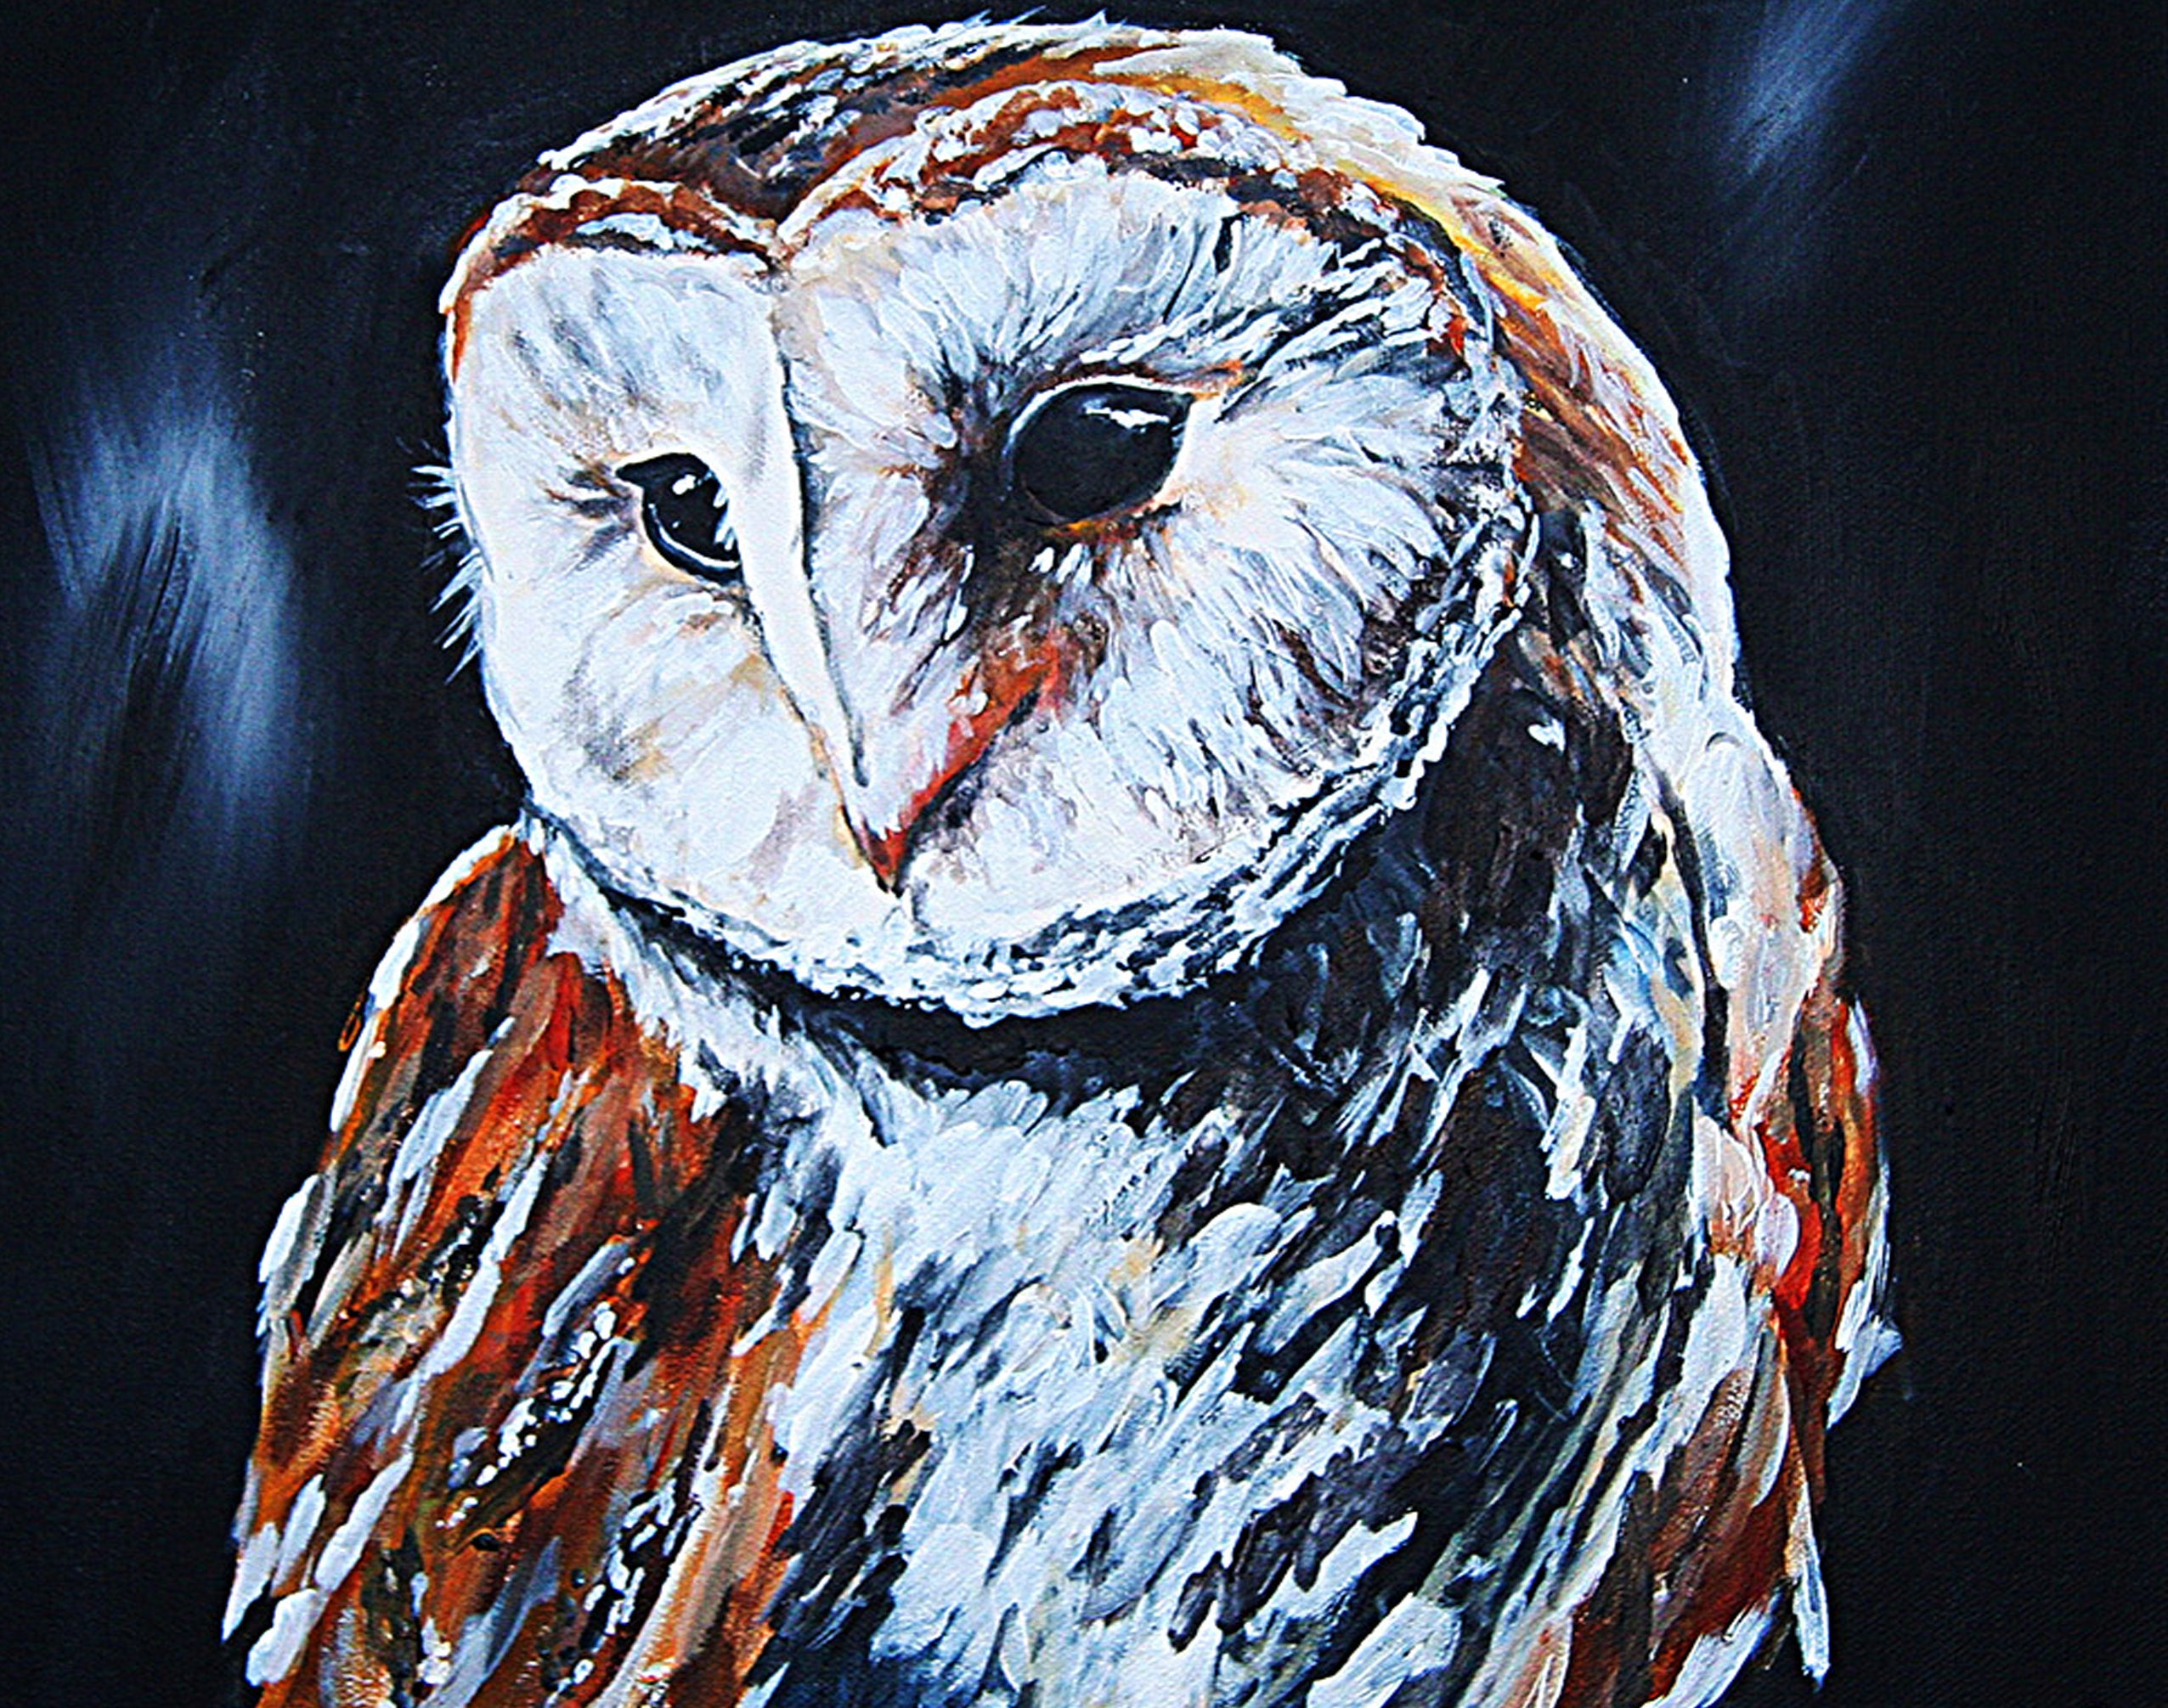 Rebeccamorris Art - Barn Owl